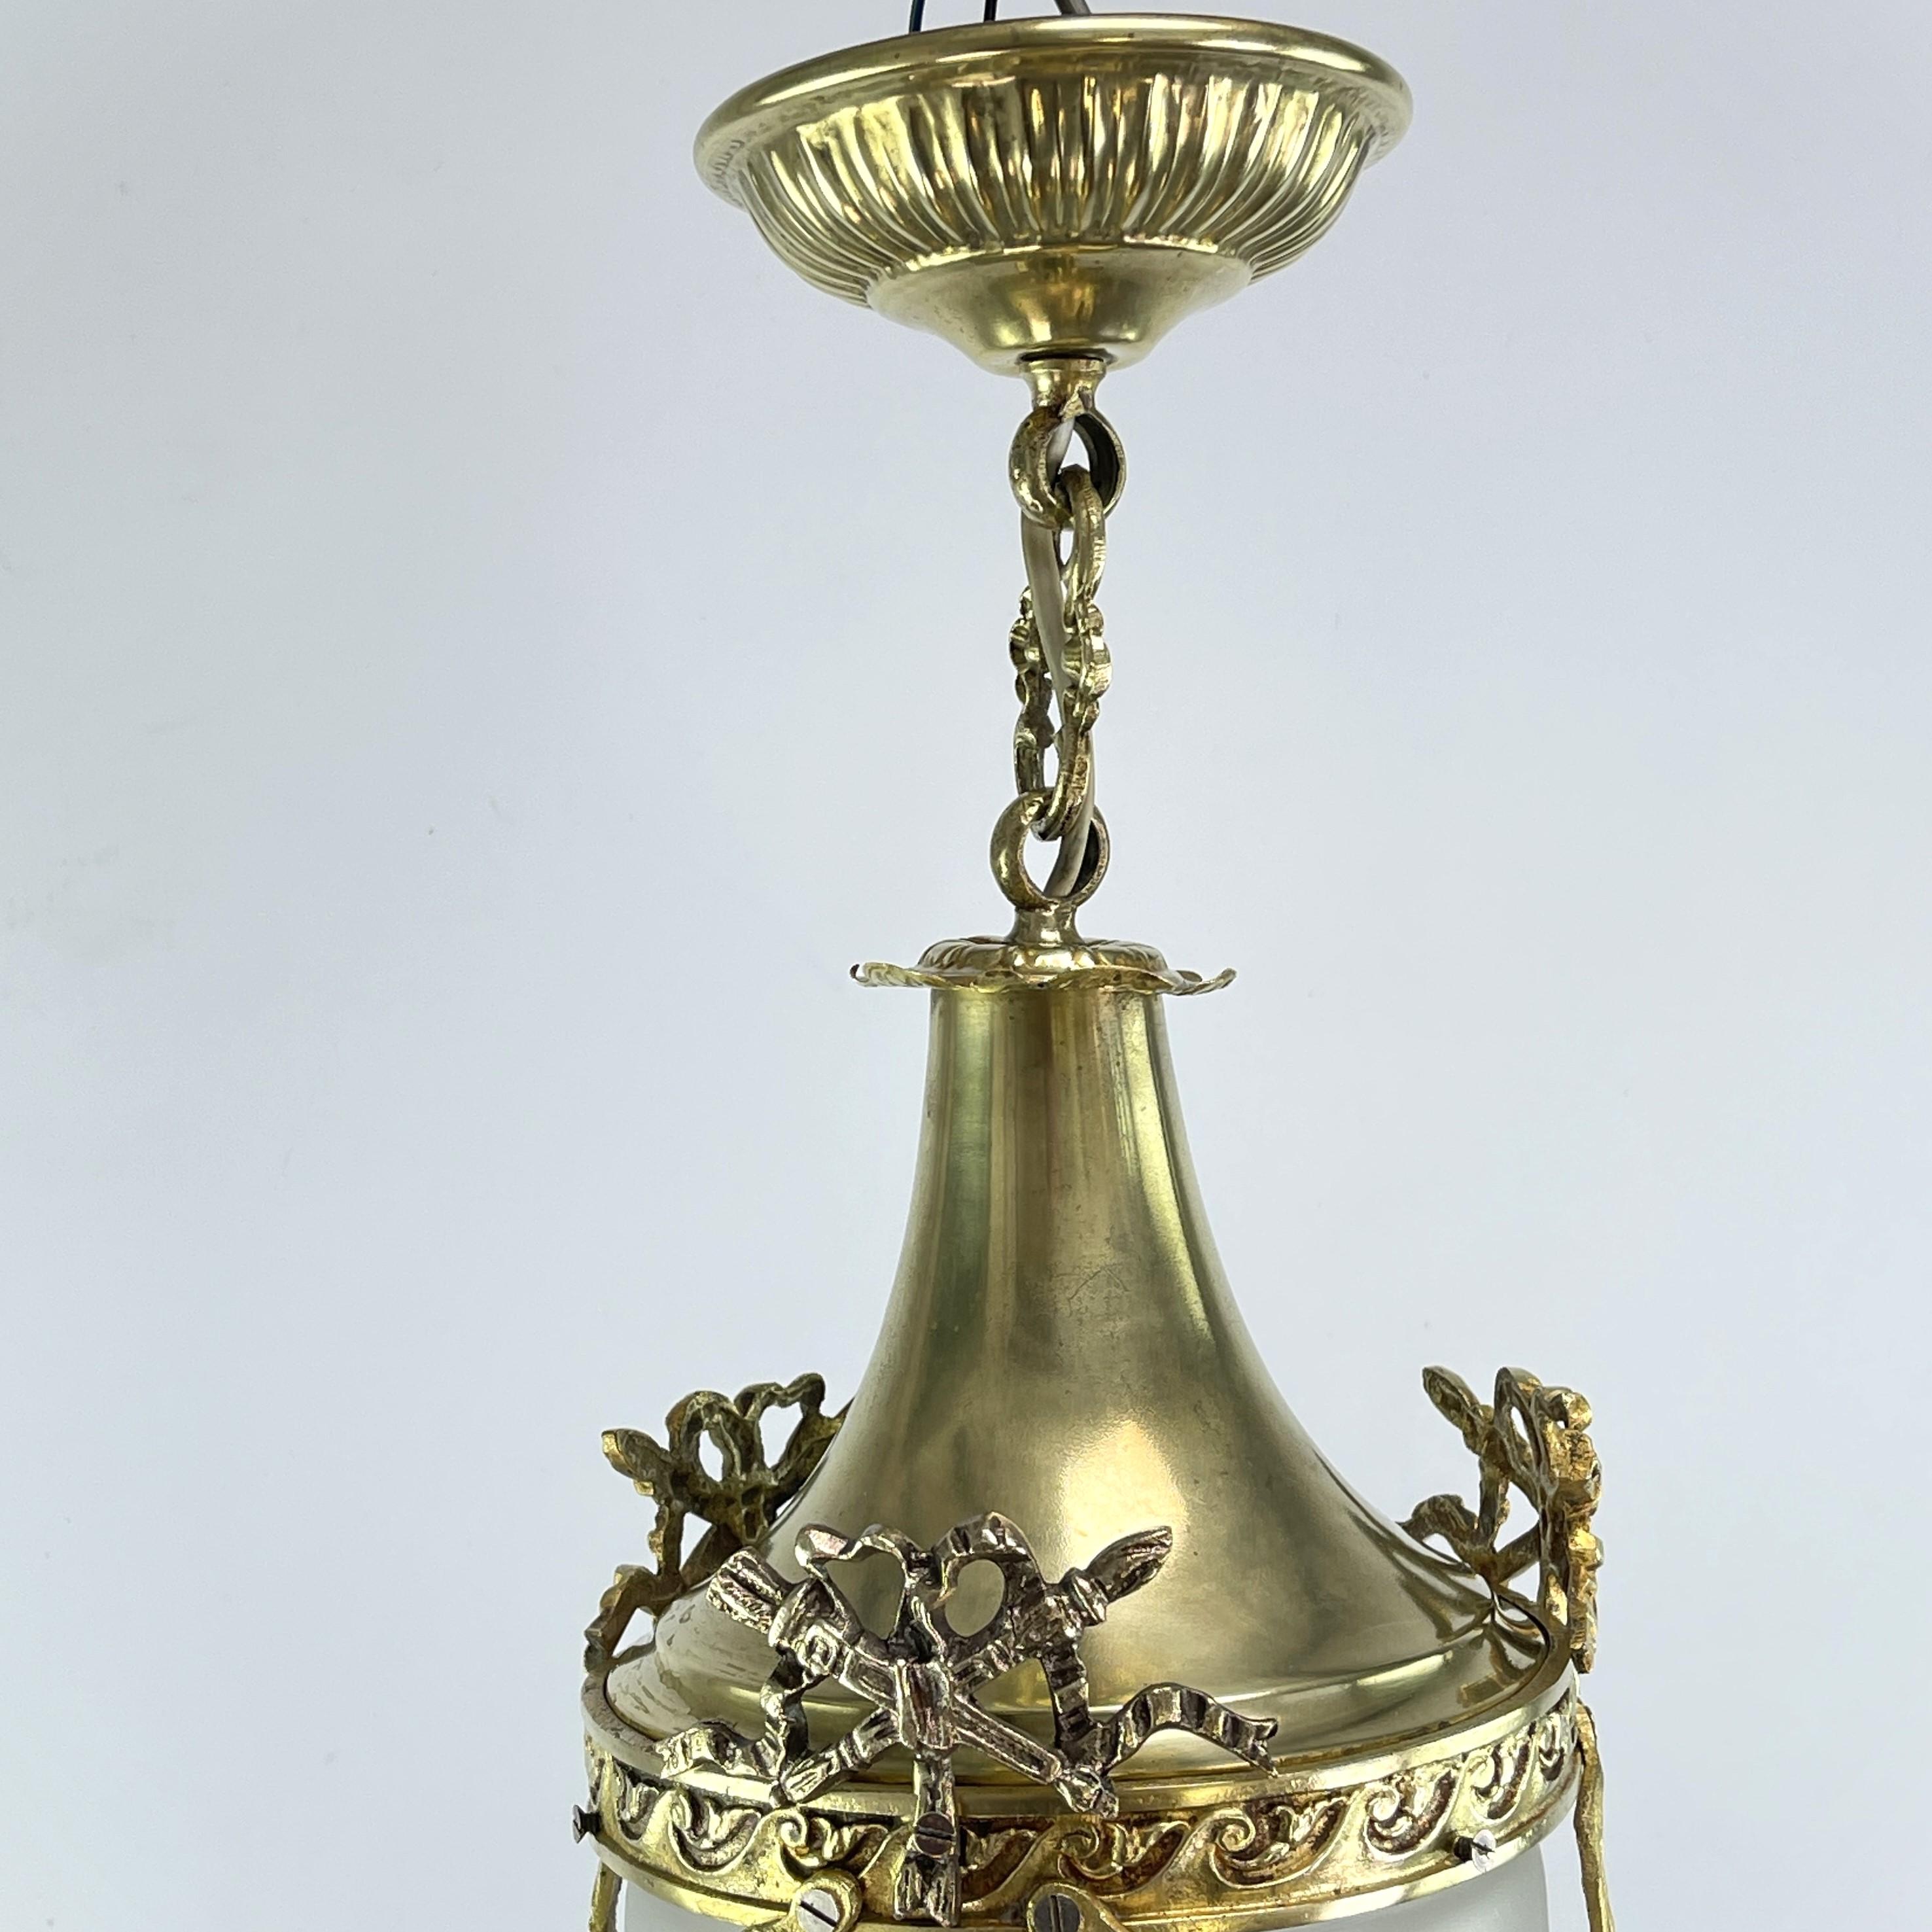 20th Century Art Nouveau Hanging Lamp Bronze, Teardrop Shape, 1900s For Sale